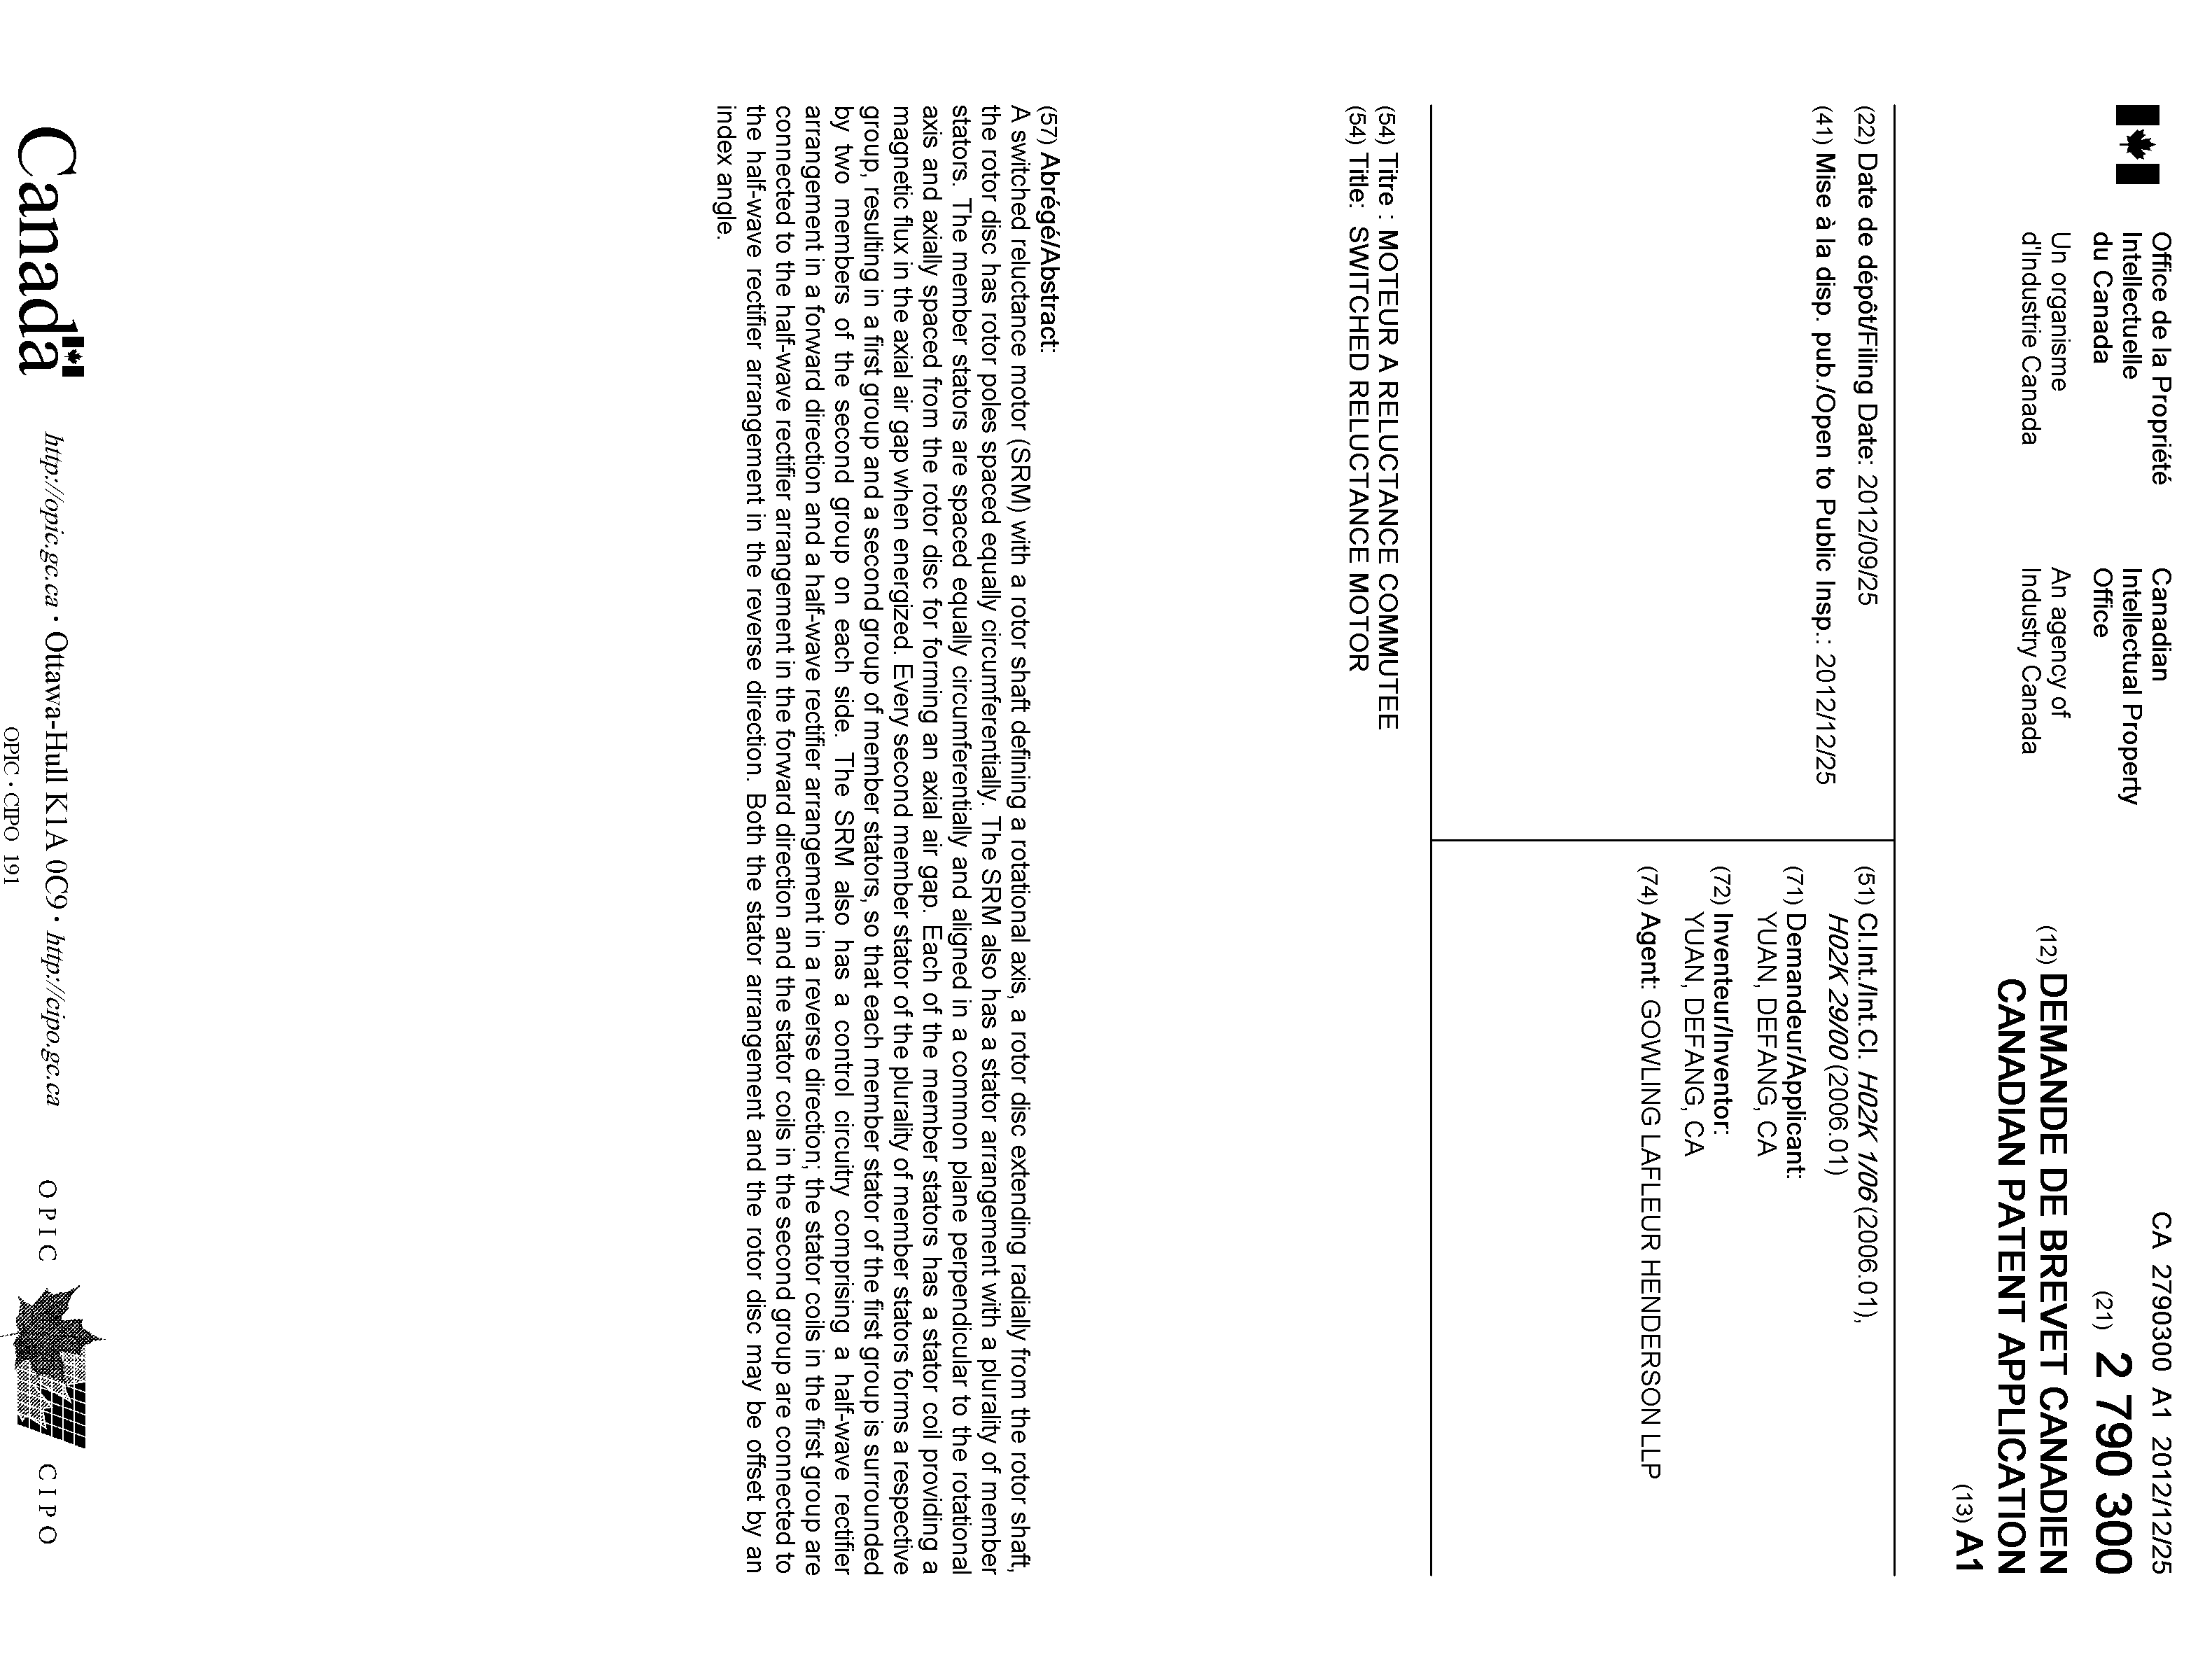 Document de brevet canadien 2790300. Page couverture 20111228. Image 1 de 1